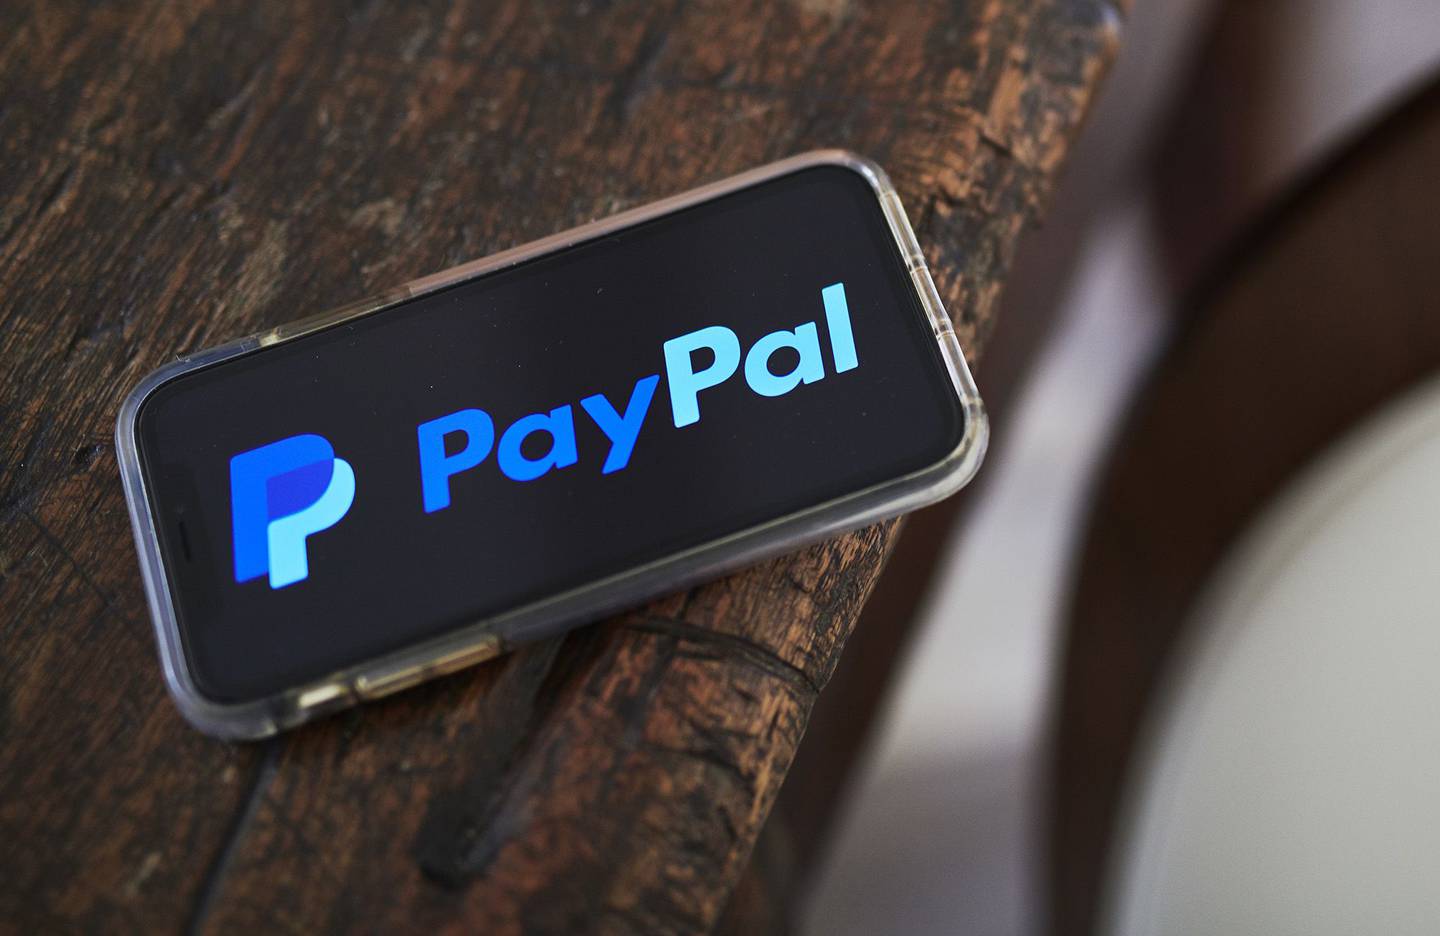 Señalización de PayPal Holdings Inc. en un iPhone de Apple Inc., en Little Falls, Nueva Jersey, Estados Unidos, el sábado 20 de julio de 2019.dfd